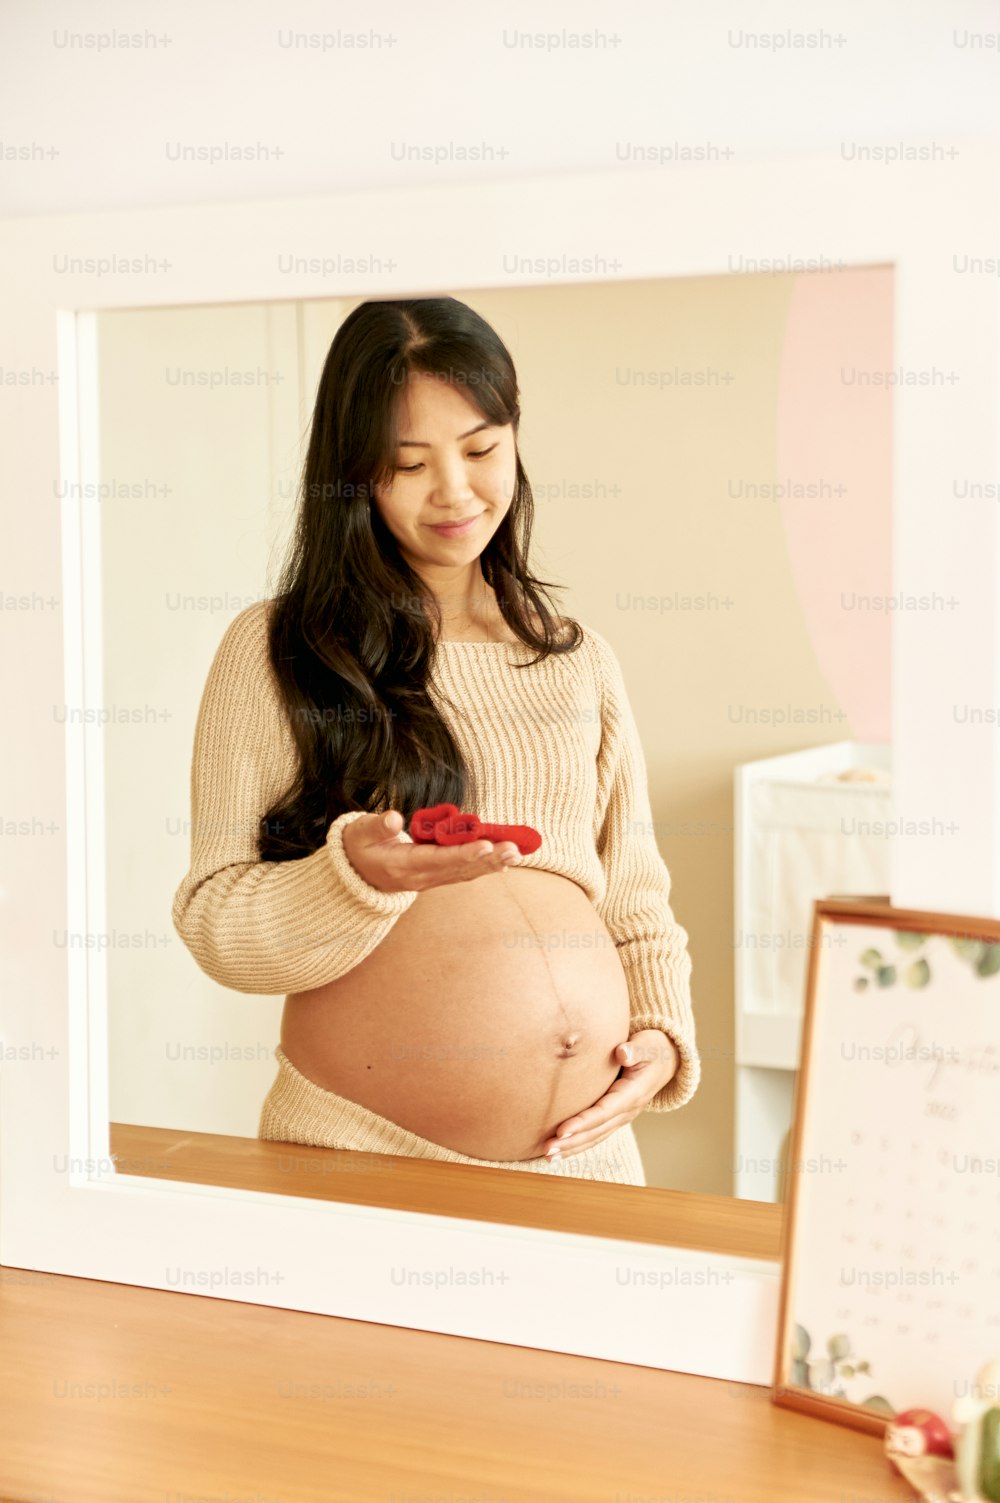 una mujer embarazada mirando su teléfono celular